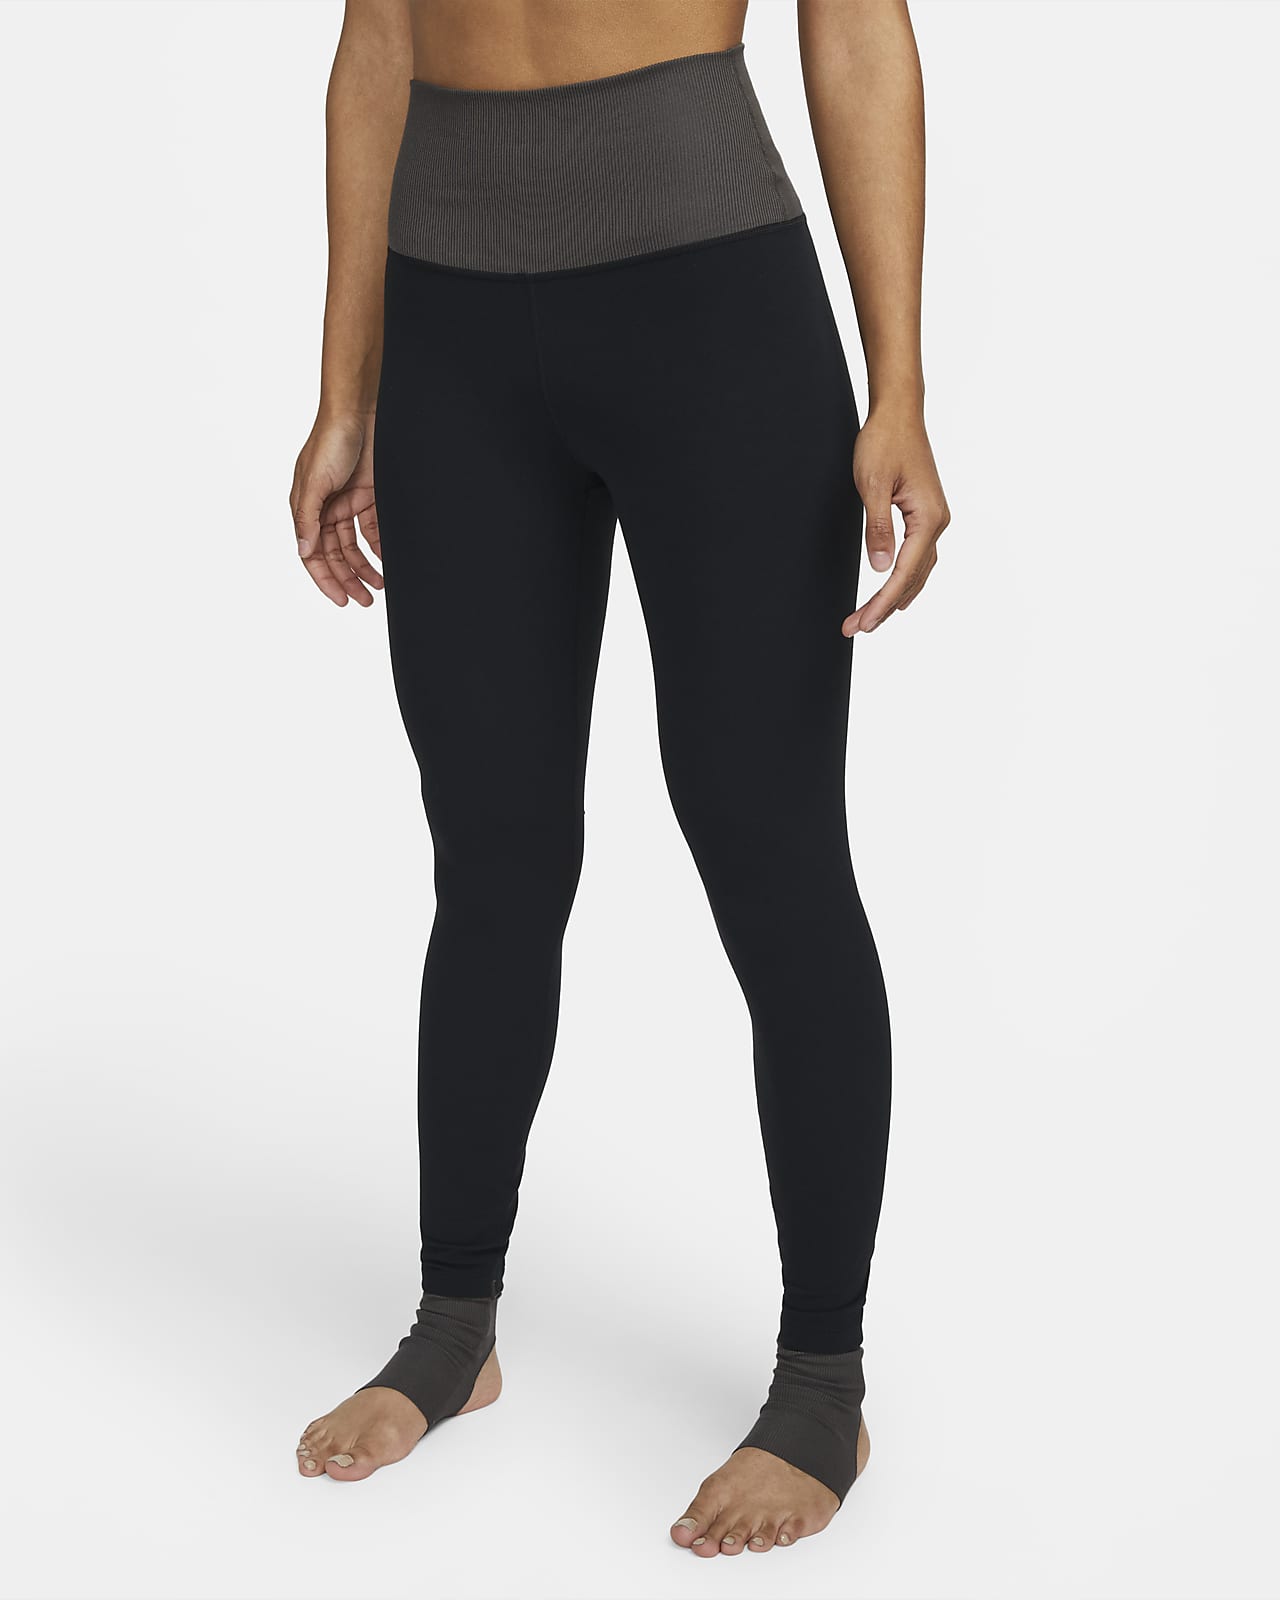 Leggings a 7/8 a vita alta in blocchi di colore Nike Yoga Luxe – Donna